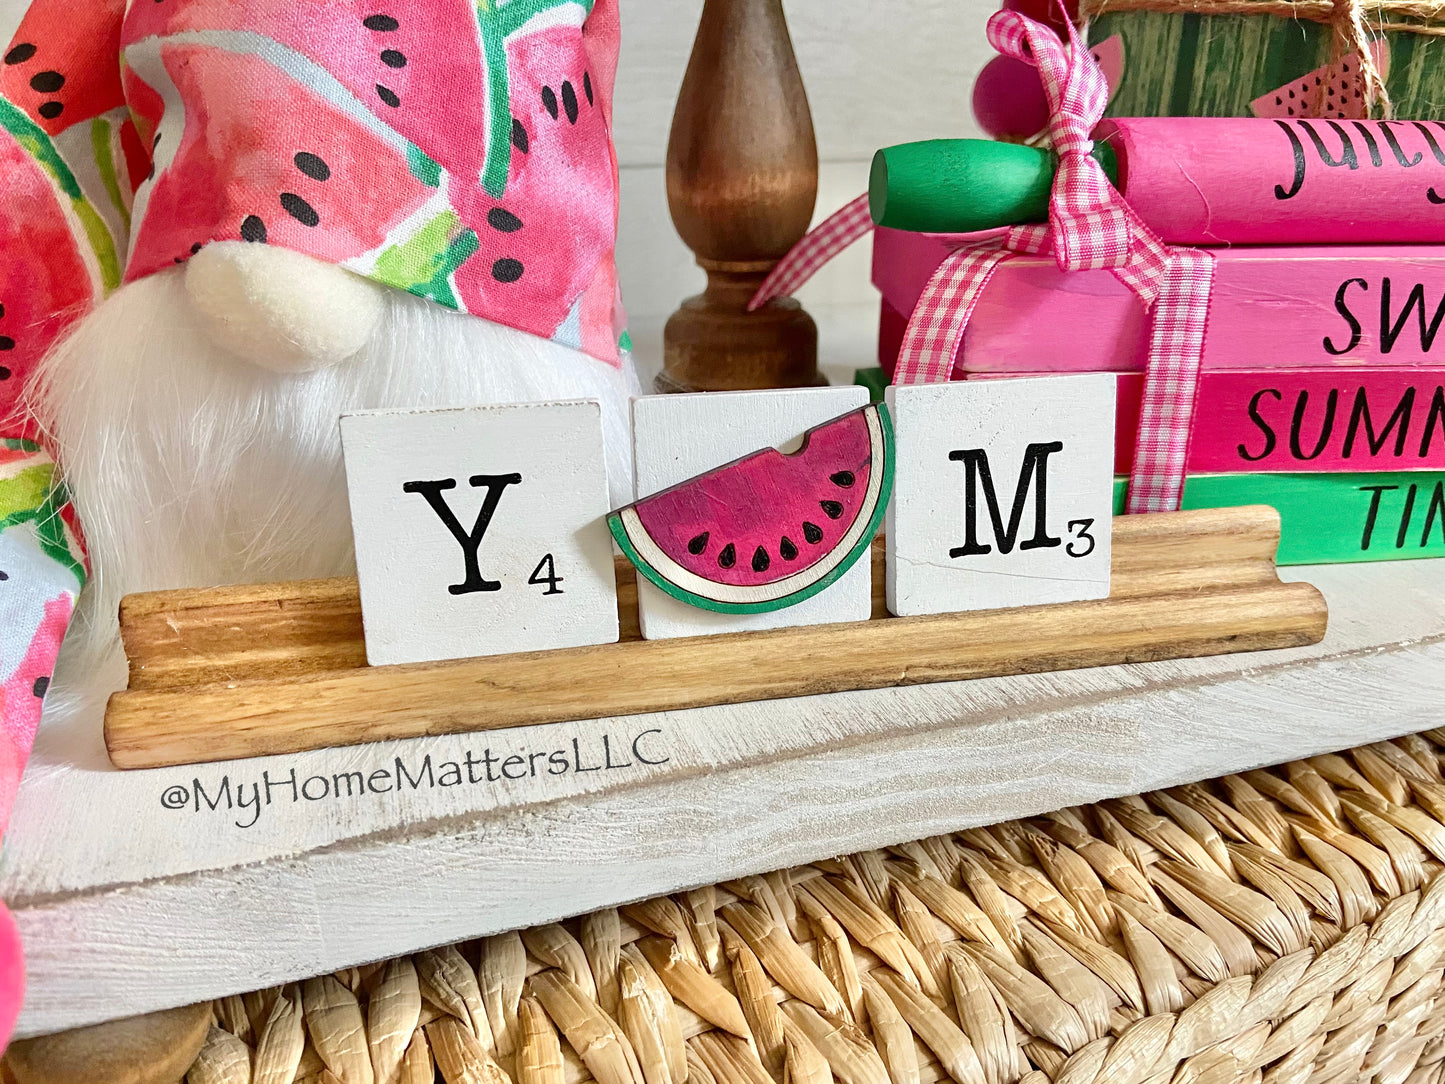 DIY Mini Letter Tiles - Watermelon (Lmt. Edition)